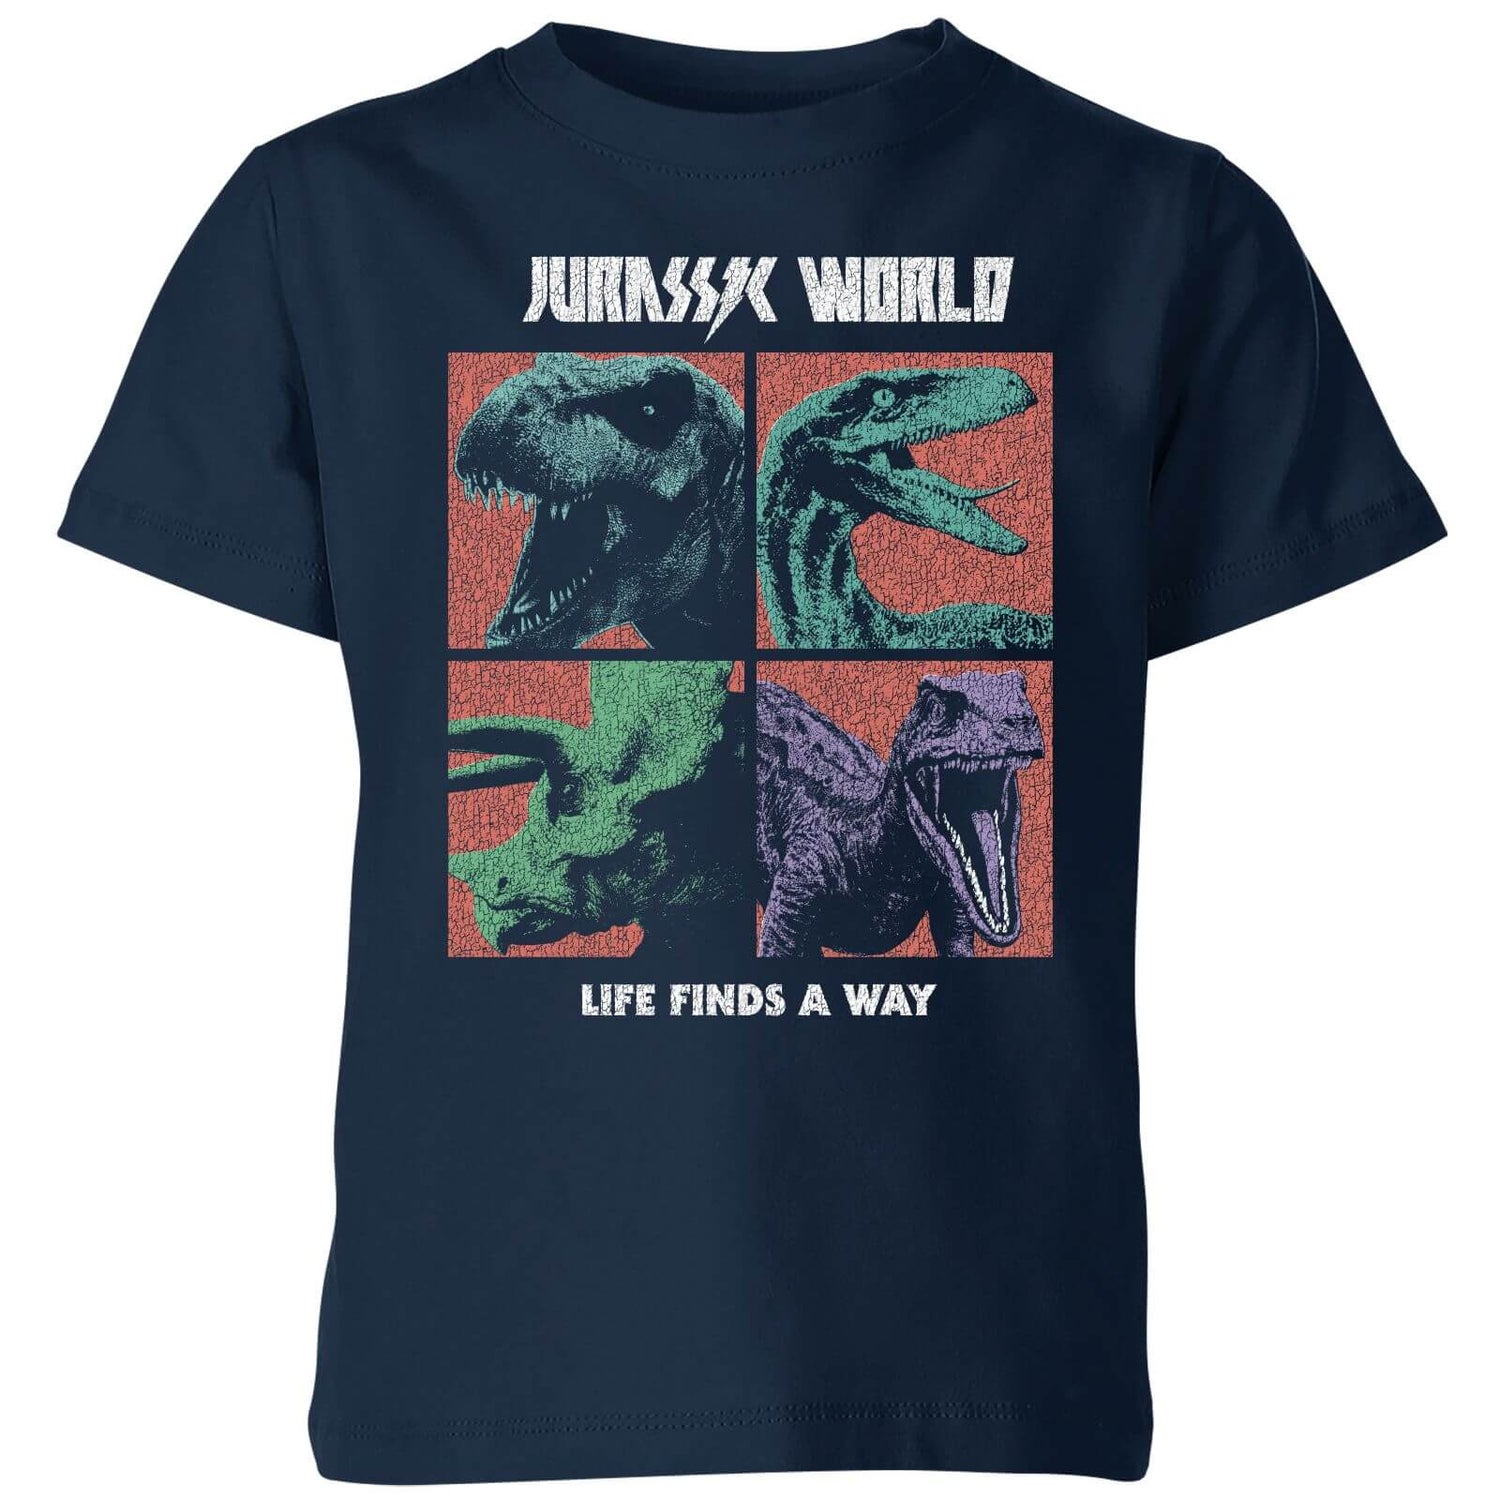 Jurassic Park World Four Colour Faces Kids' T-Shirt - Navy